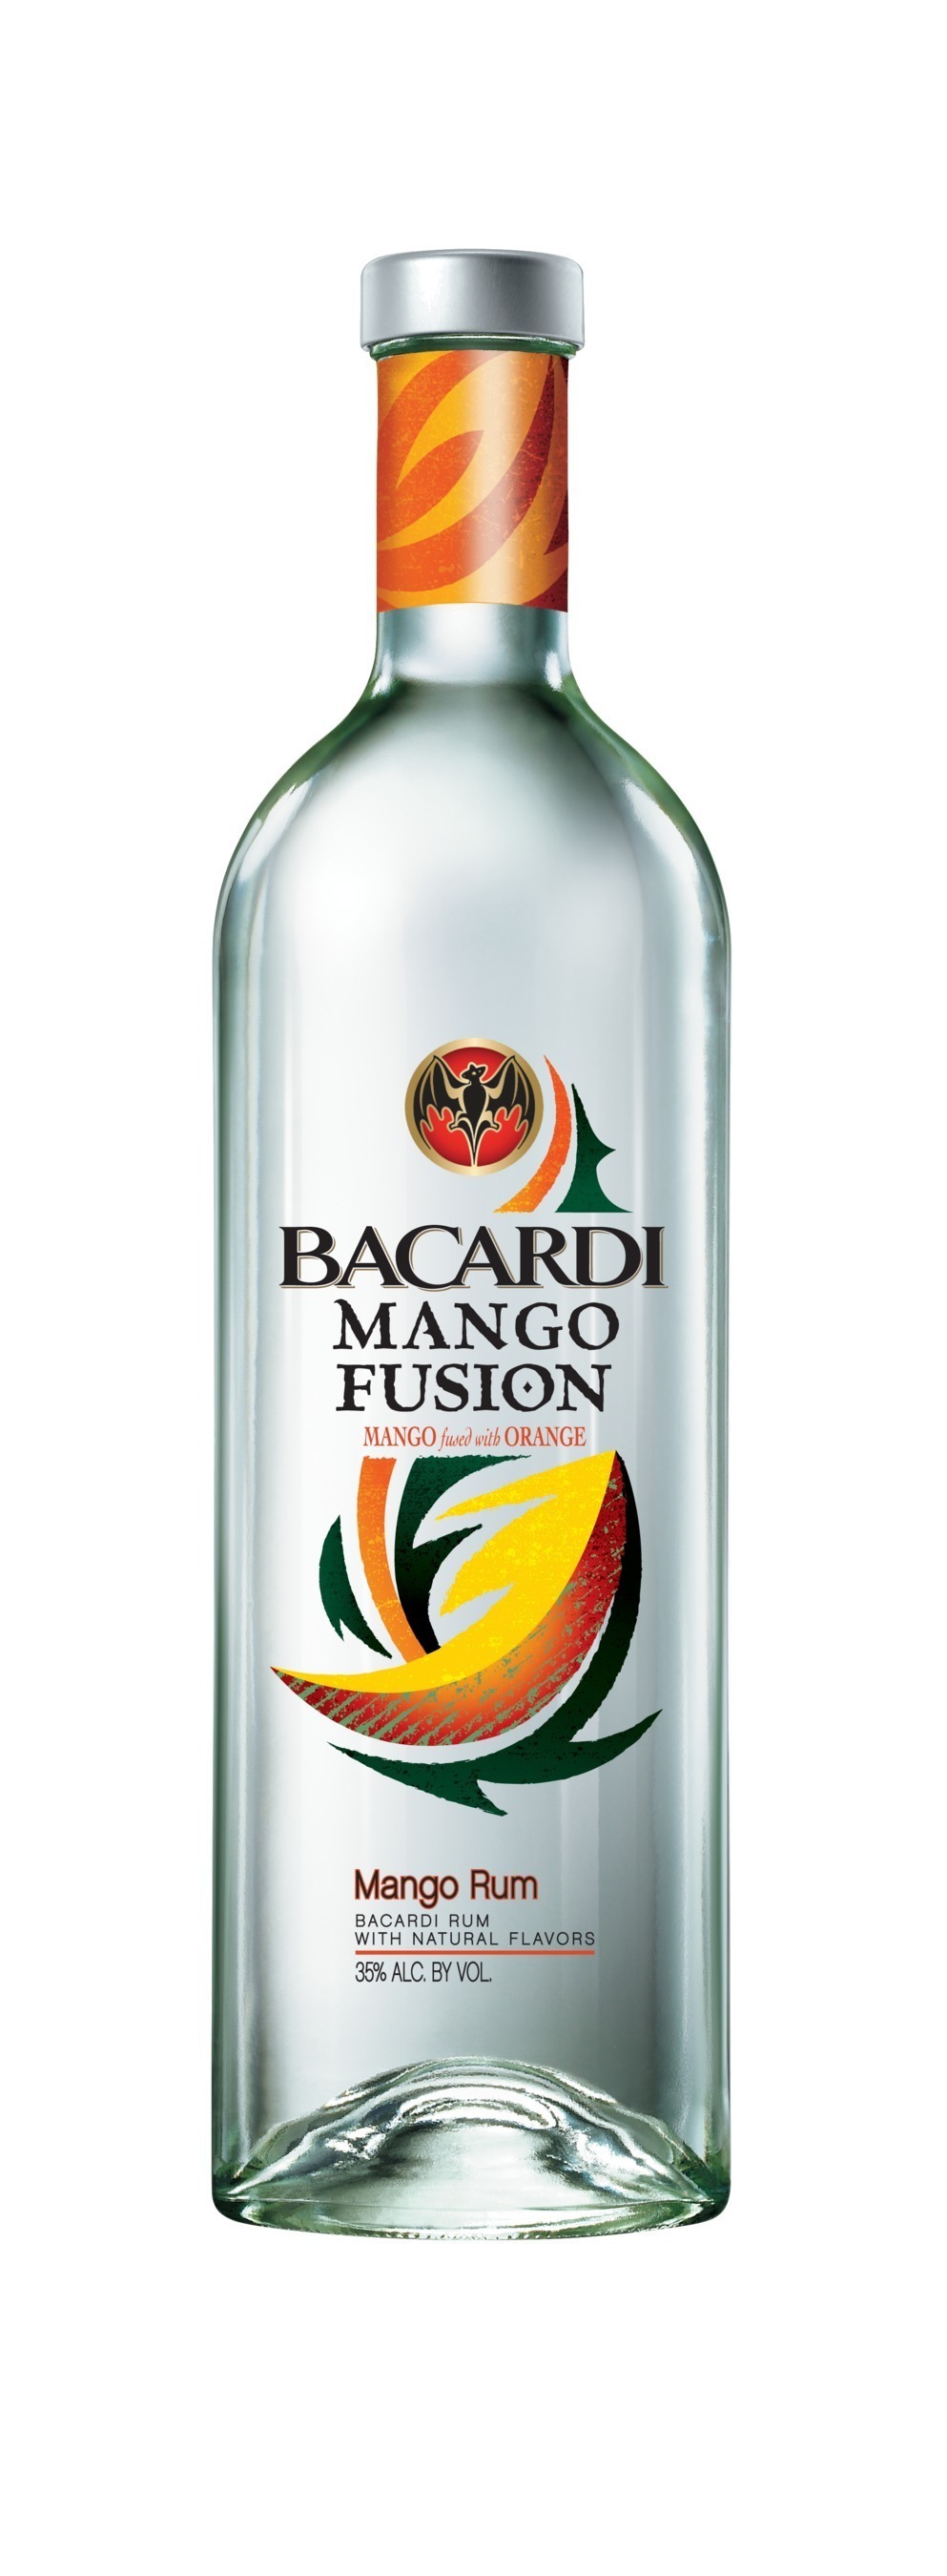 BACARDI(R) Mango Fusion(TM) Flavored Rum is a one of a kind fusion of mango and orange rums. (PRNewsFoto/Bacardi U.S.A., Inc.)